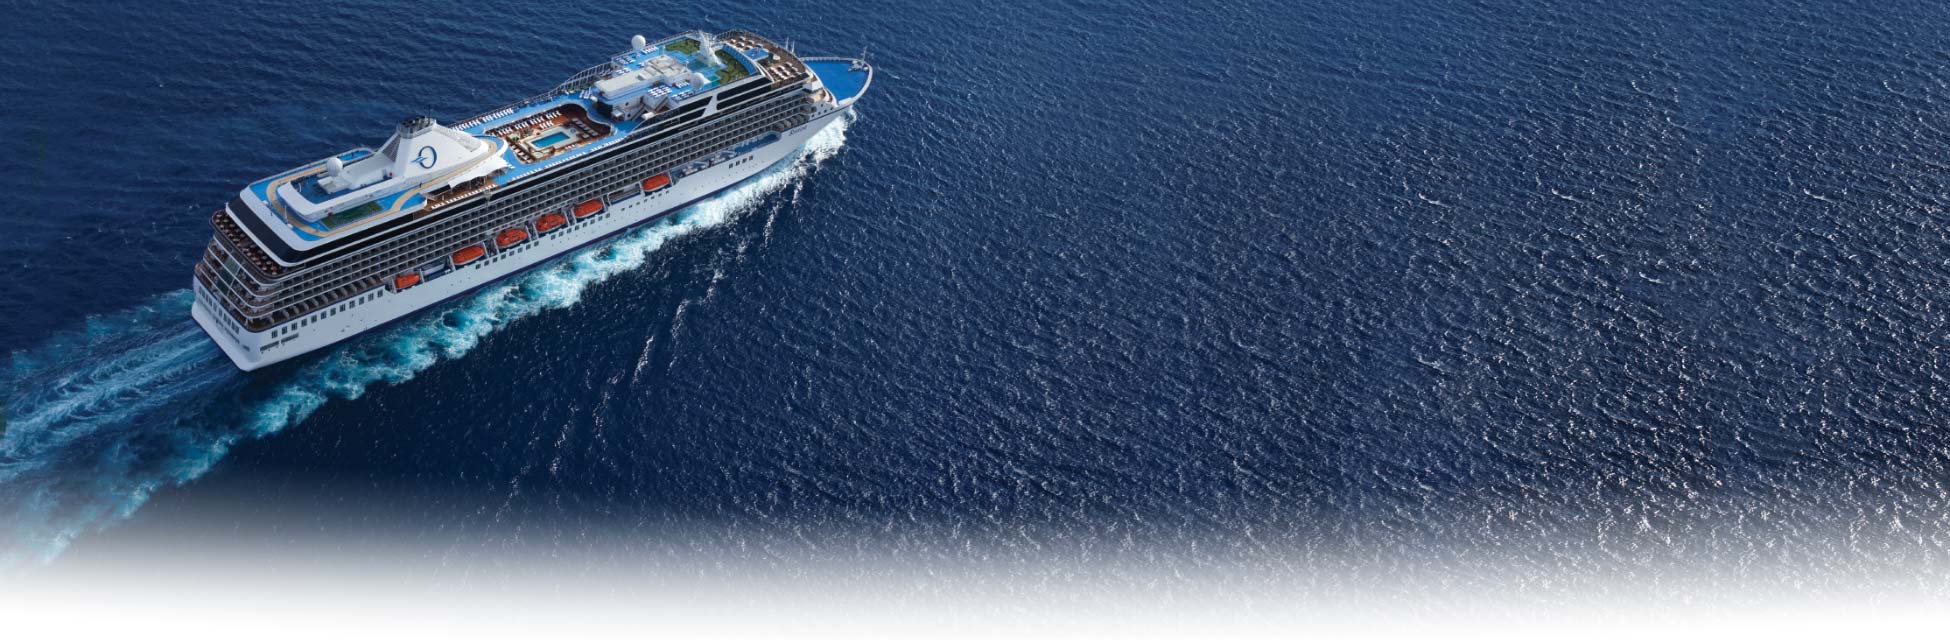 Buitengewone cruises persoonlijk samengesteld door experts - VCK Cruises